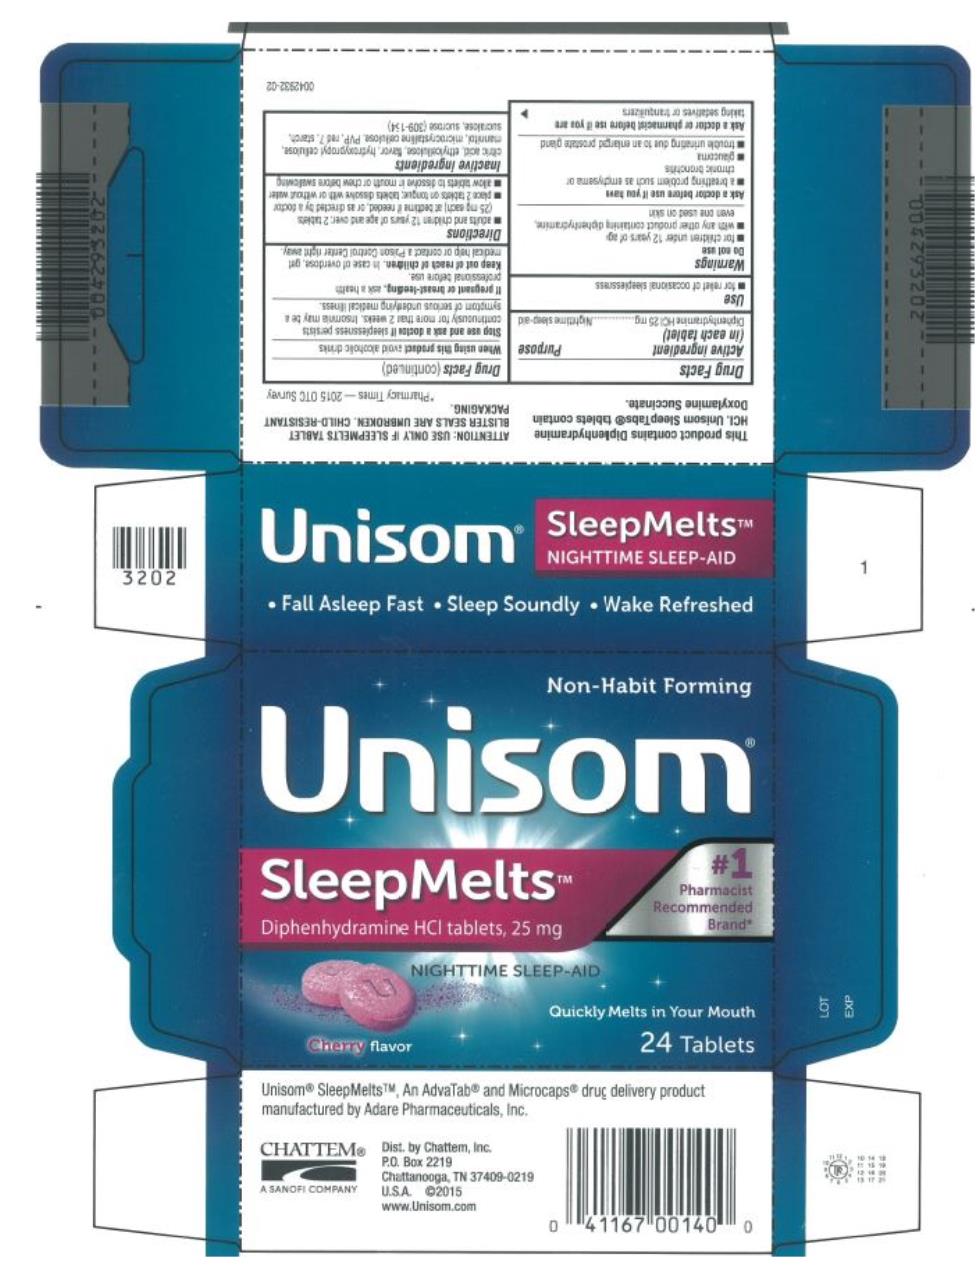 Unisom®
SleepMeltsTM 
Diphenhydramine HCI tablets, 25 mg
NIGHTTIME SLEEP-AID
24 Tablets
